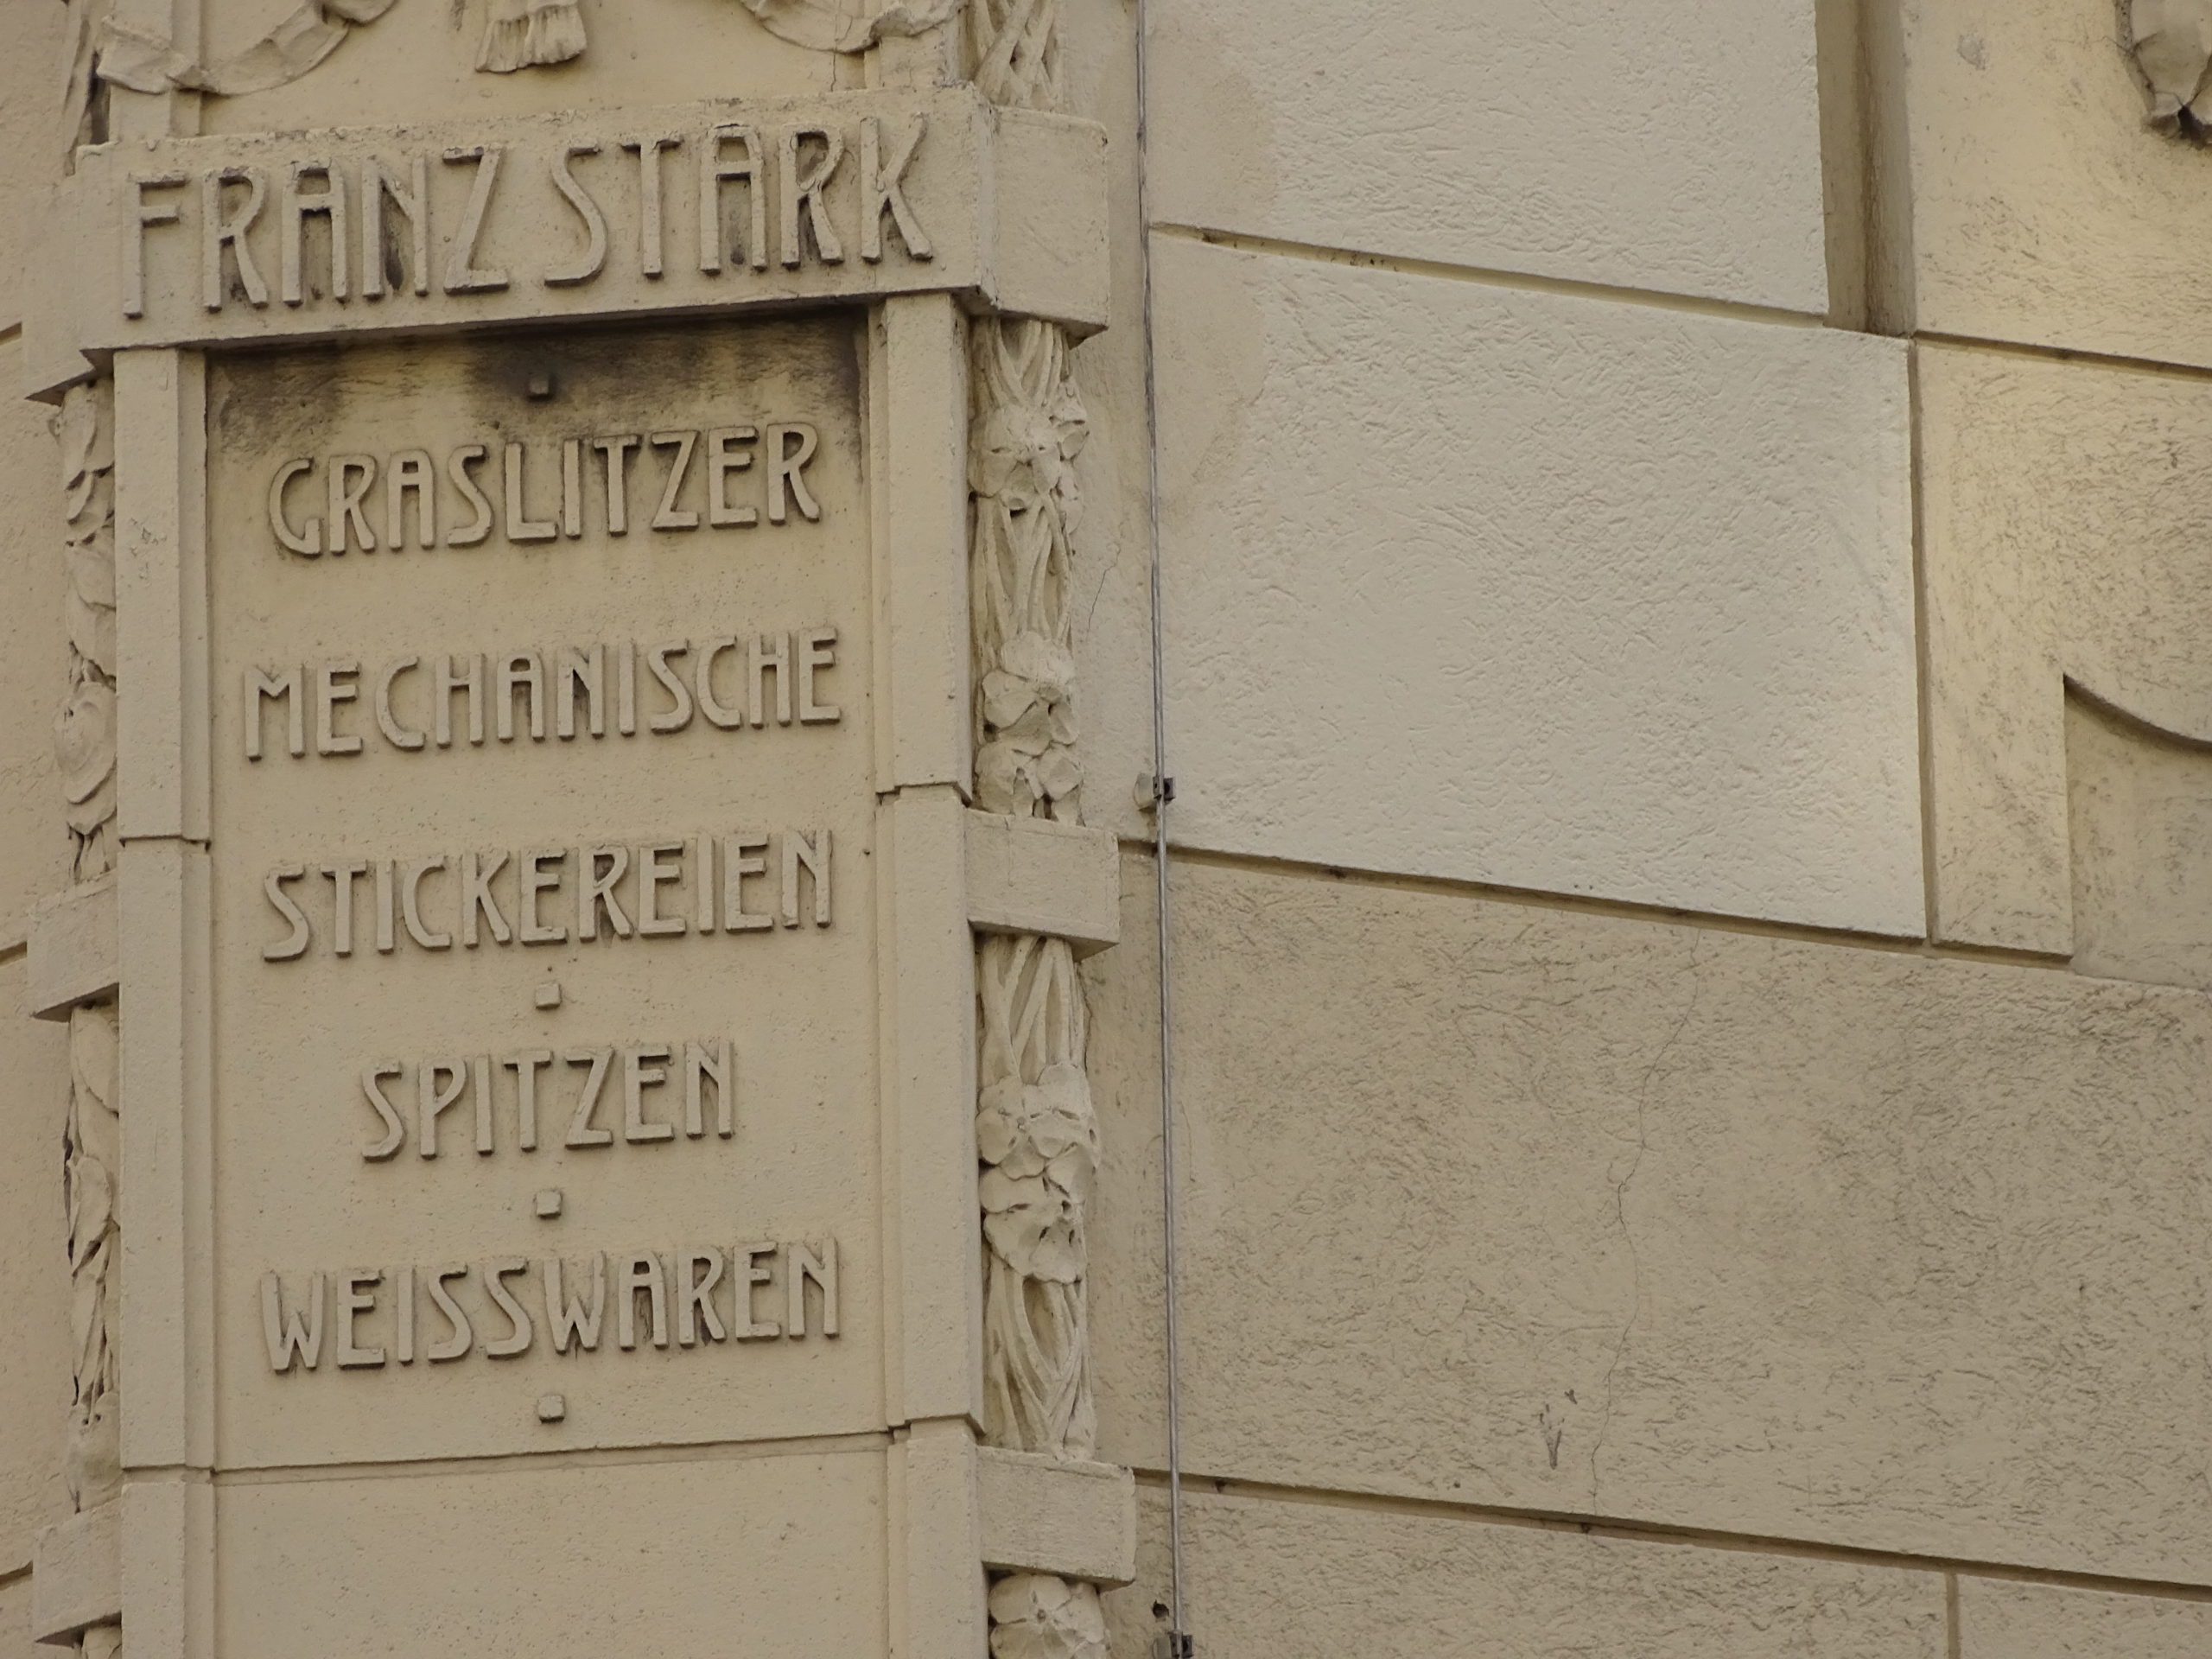 In der Richtergasse 1 Ecke Neubaugasse steht ein Haus auf dessen Fassade steht: "Franz Stark, Graslitzer Mechanische Stickereien, Spitzen, Weißwaren"